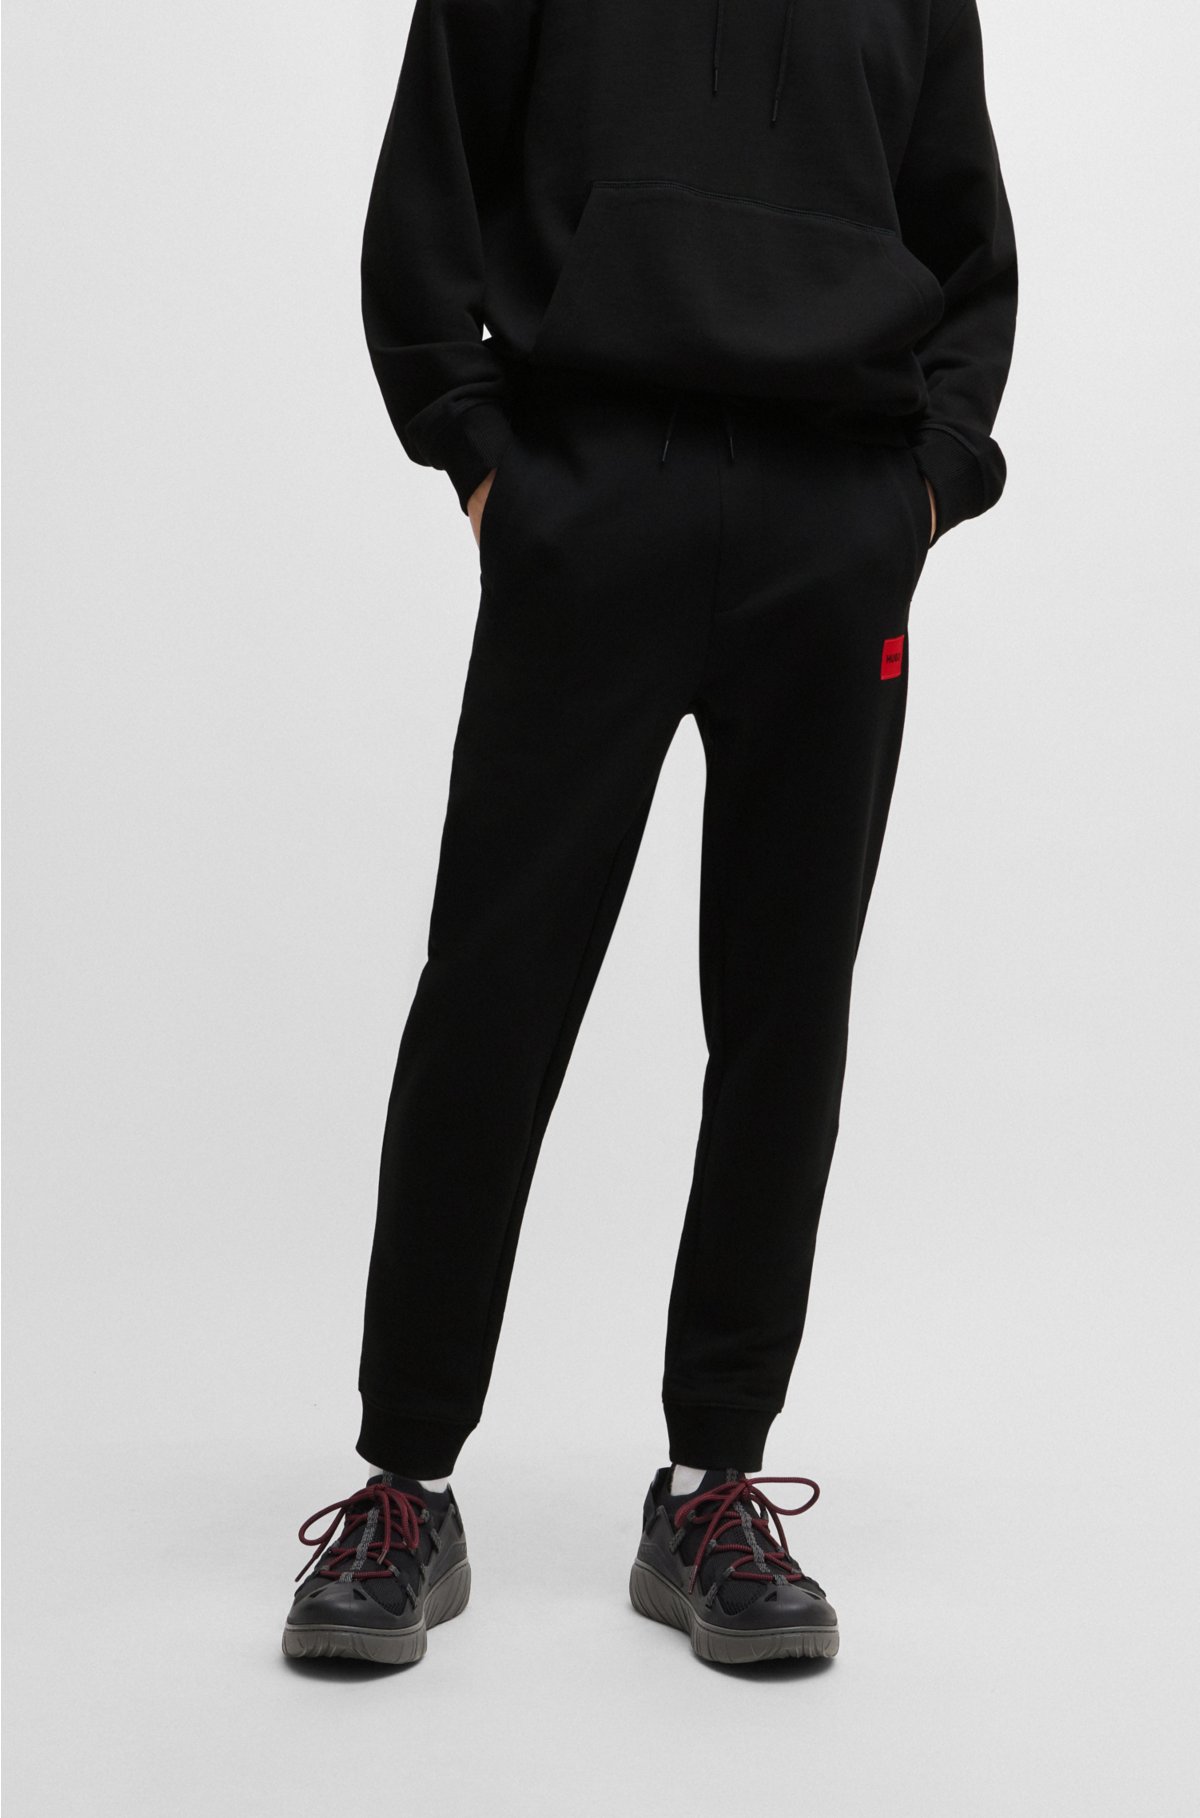 Nike Sportswear Club French Terry Women Romper Black Jumpsuit Size